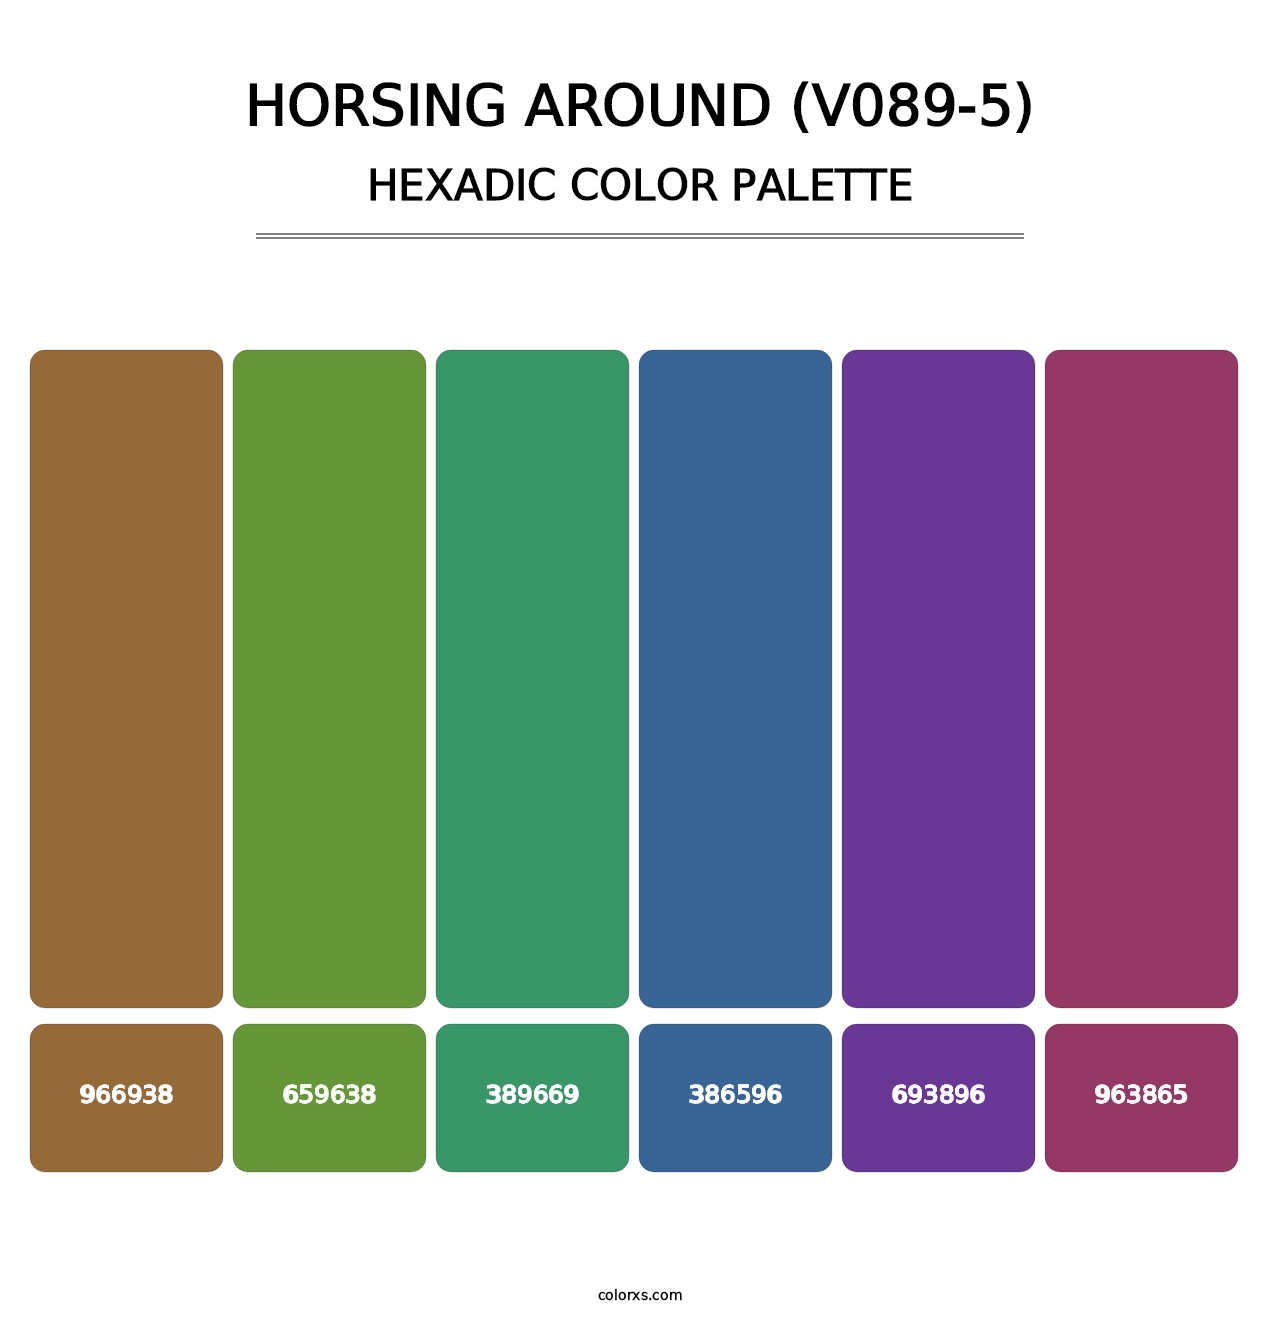 Horsing Around (V089-5) - Hexadic Color Palette